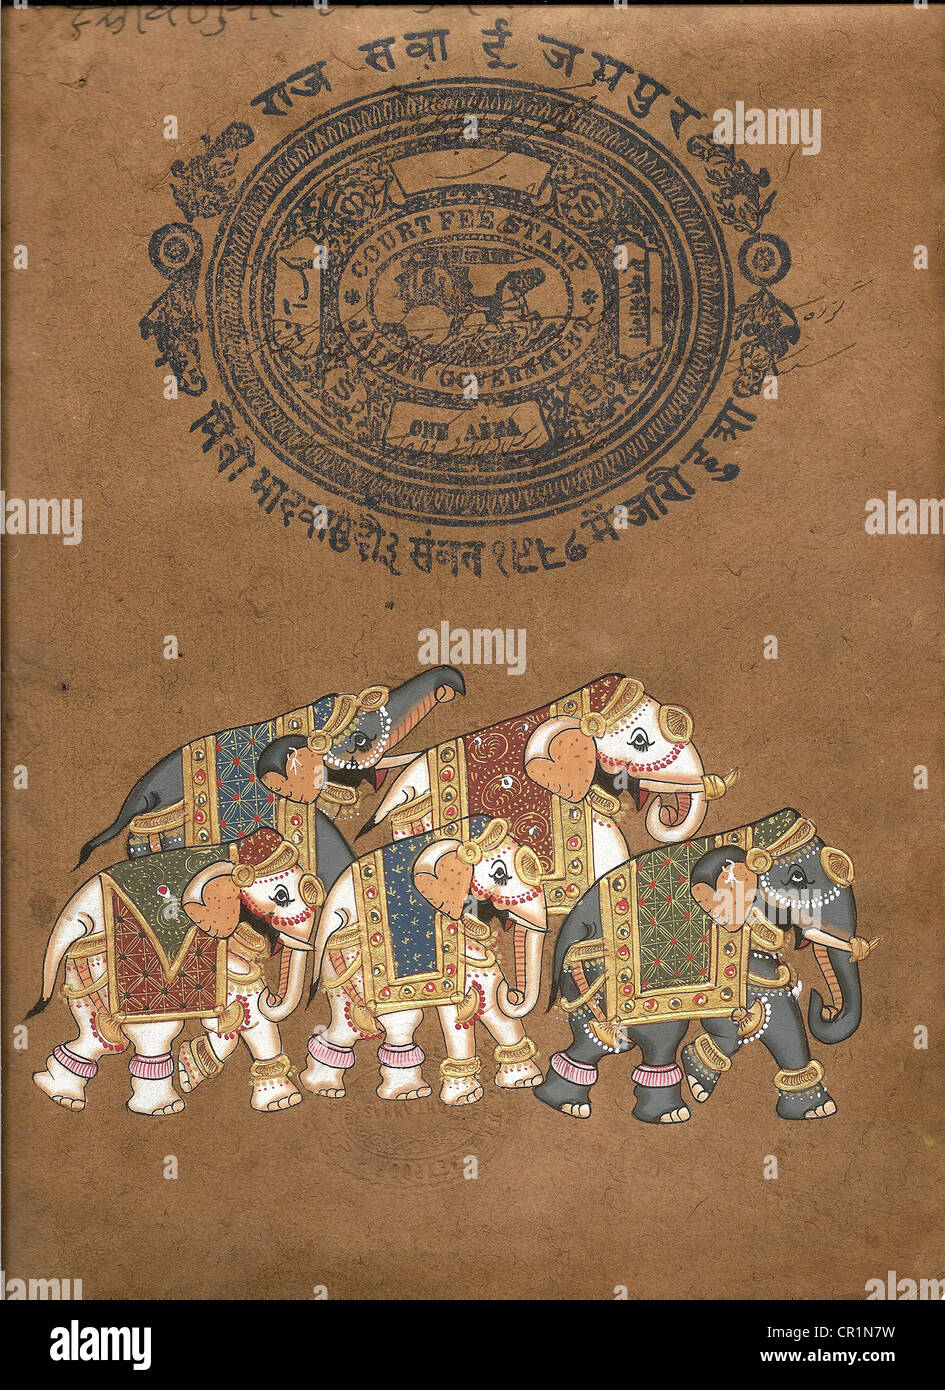 Caprisoned sur éléphant parade.miniature indienne la peinture sur papier du 19e siècle. Udaipur, Inde Banque D'Images